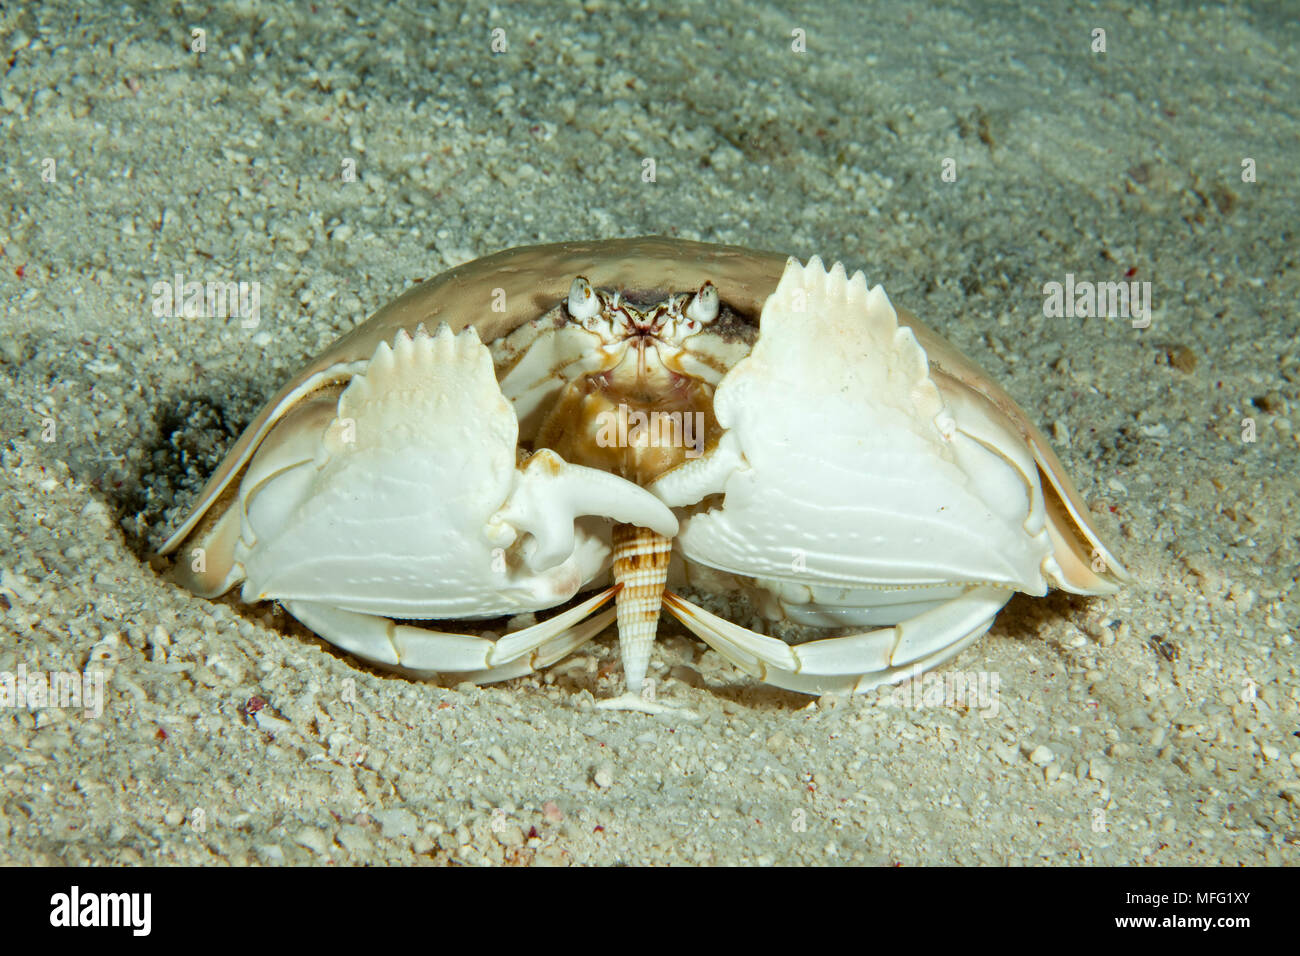 Giant box crab, Calappa calappa eating a shell, Tubbataha Natural Park, Natural World Heritage Site,  Sulu Sea, Cagayancillo, Palawan, Philippines Stock Photo